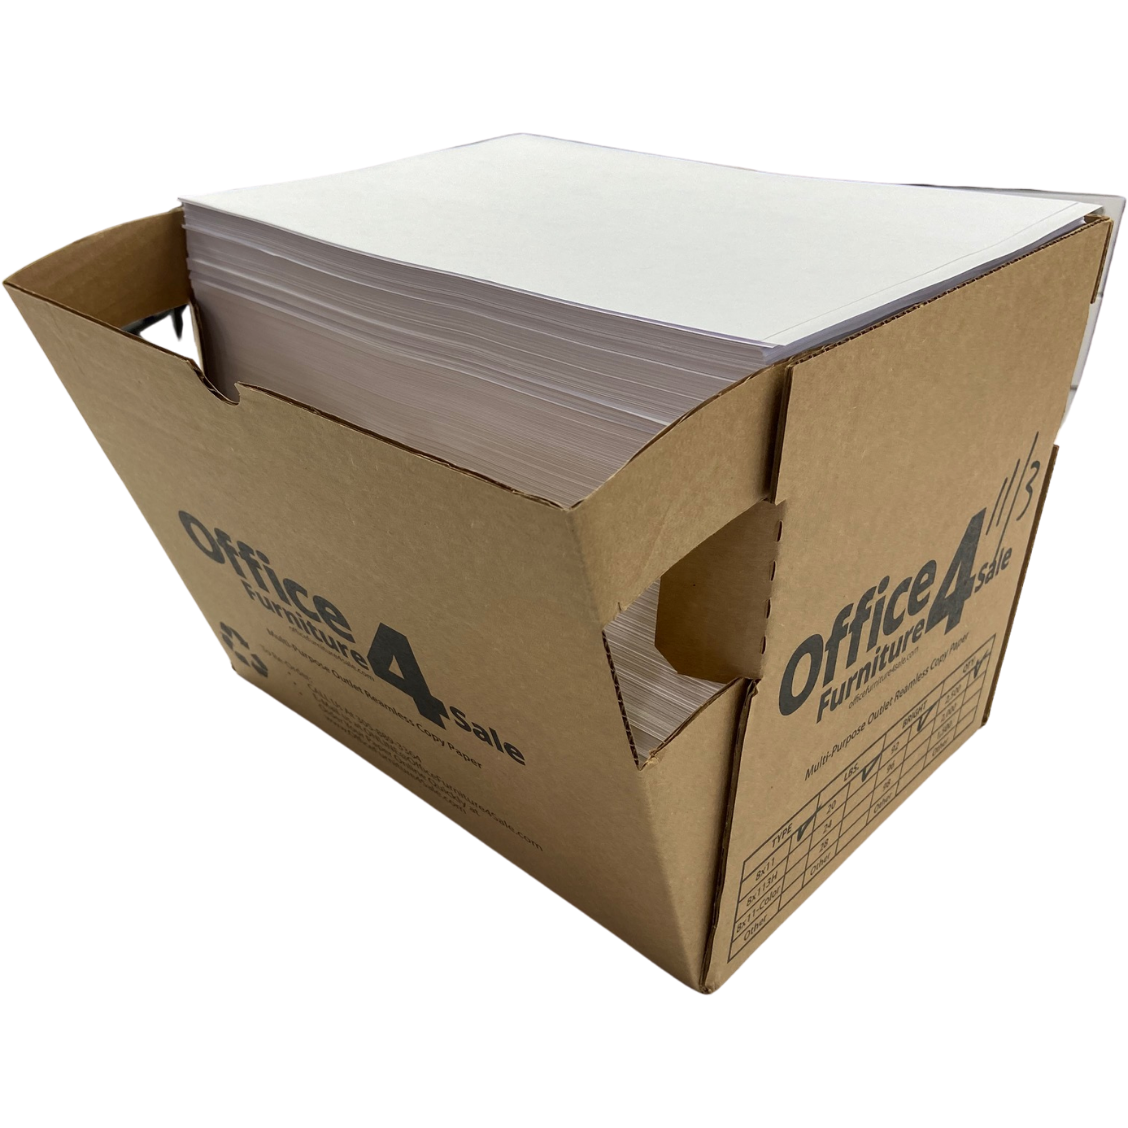 Kwik-Pak Ream-Less Copy Paper, 8.5 x 11, 20 lbs. 92-Brightness